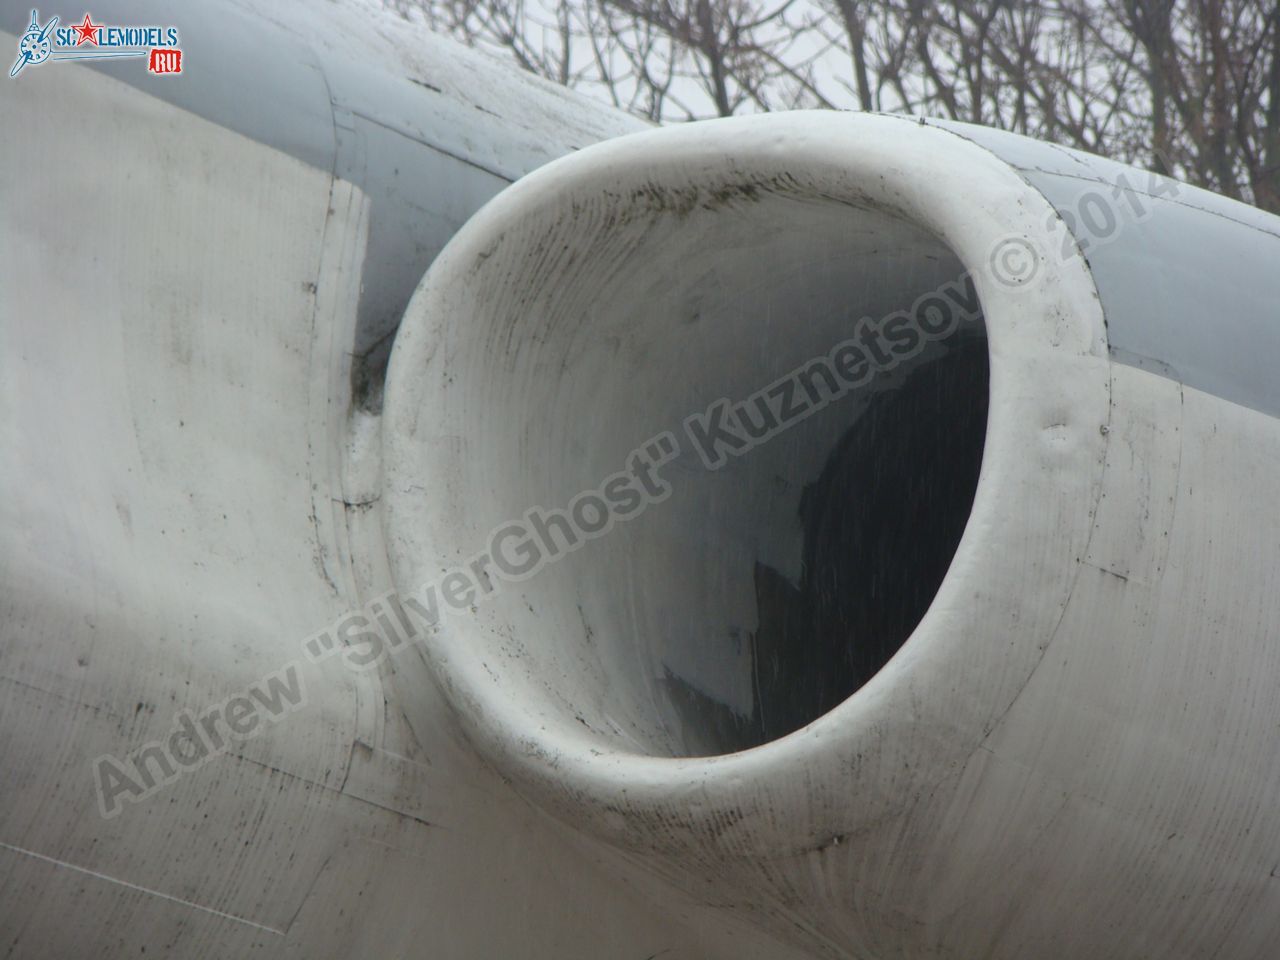 Tu-16_Badger_Smolensk_0005.jpg